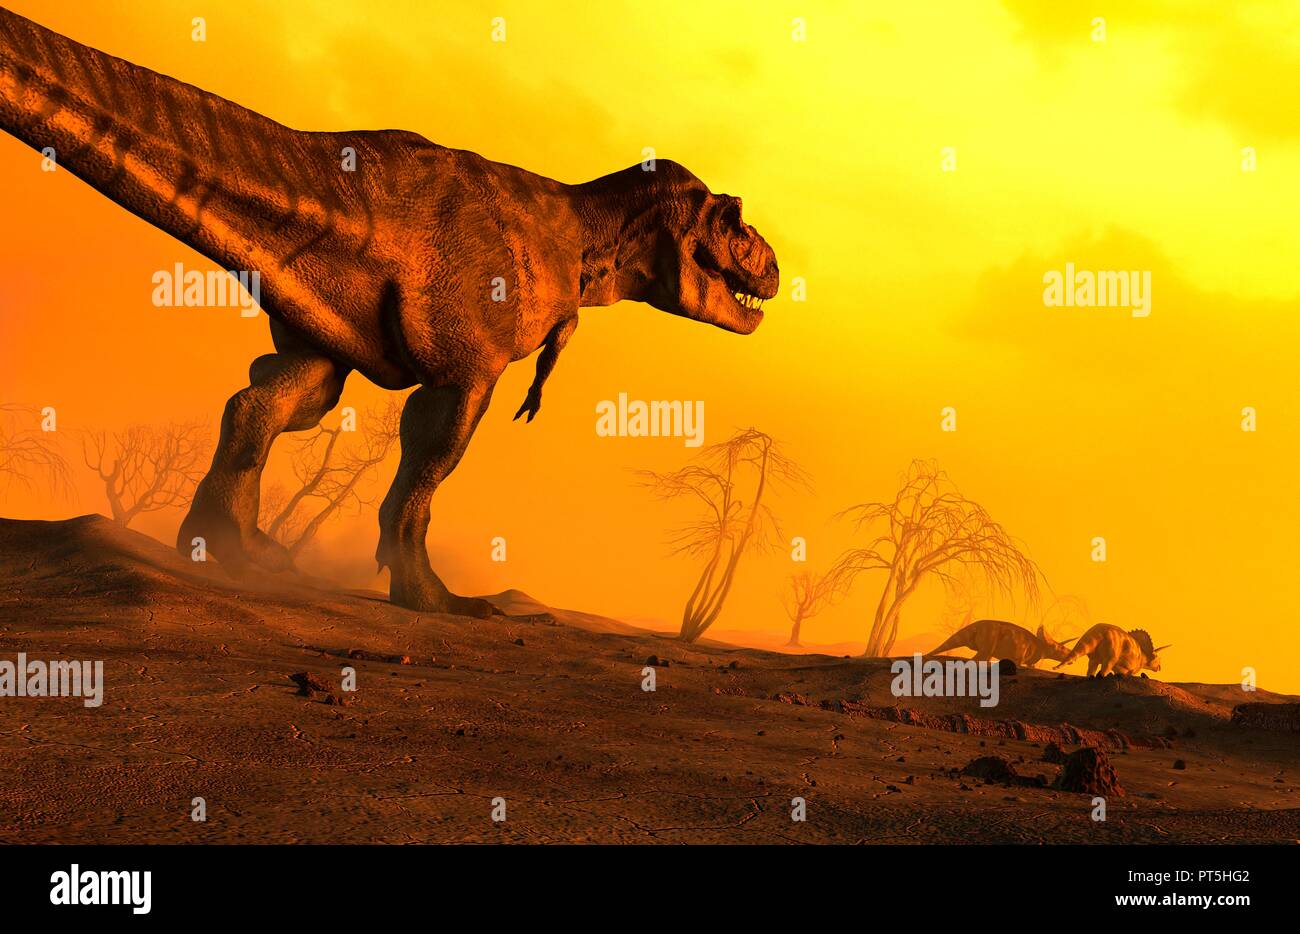 Illustrazione di un Tirannosauro Rex visto perseguire alcuni triceratops. Tirannosauro è stato uno degli ultimi dinosauri, annientati 65 milioni di anni fa durante l'evento di estinzione che si è conclusa il Cretacico. Gli scienziati ritengono che l'incidente è stato provocato da un impatto di un asteroide o cometa al largo di quello che è oggi il Messico. Tirannosauro probabilmente predati triceratops, che visse al tempo stesso anche in America del Nord. Foto Stock